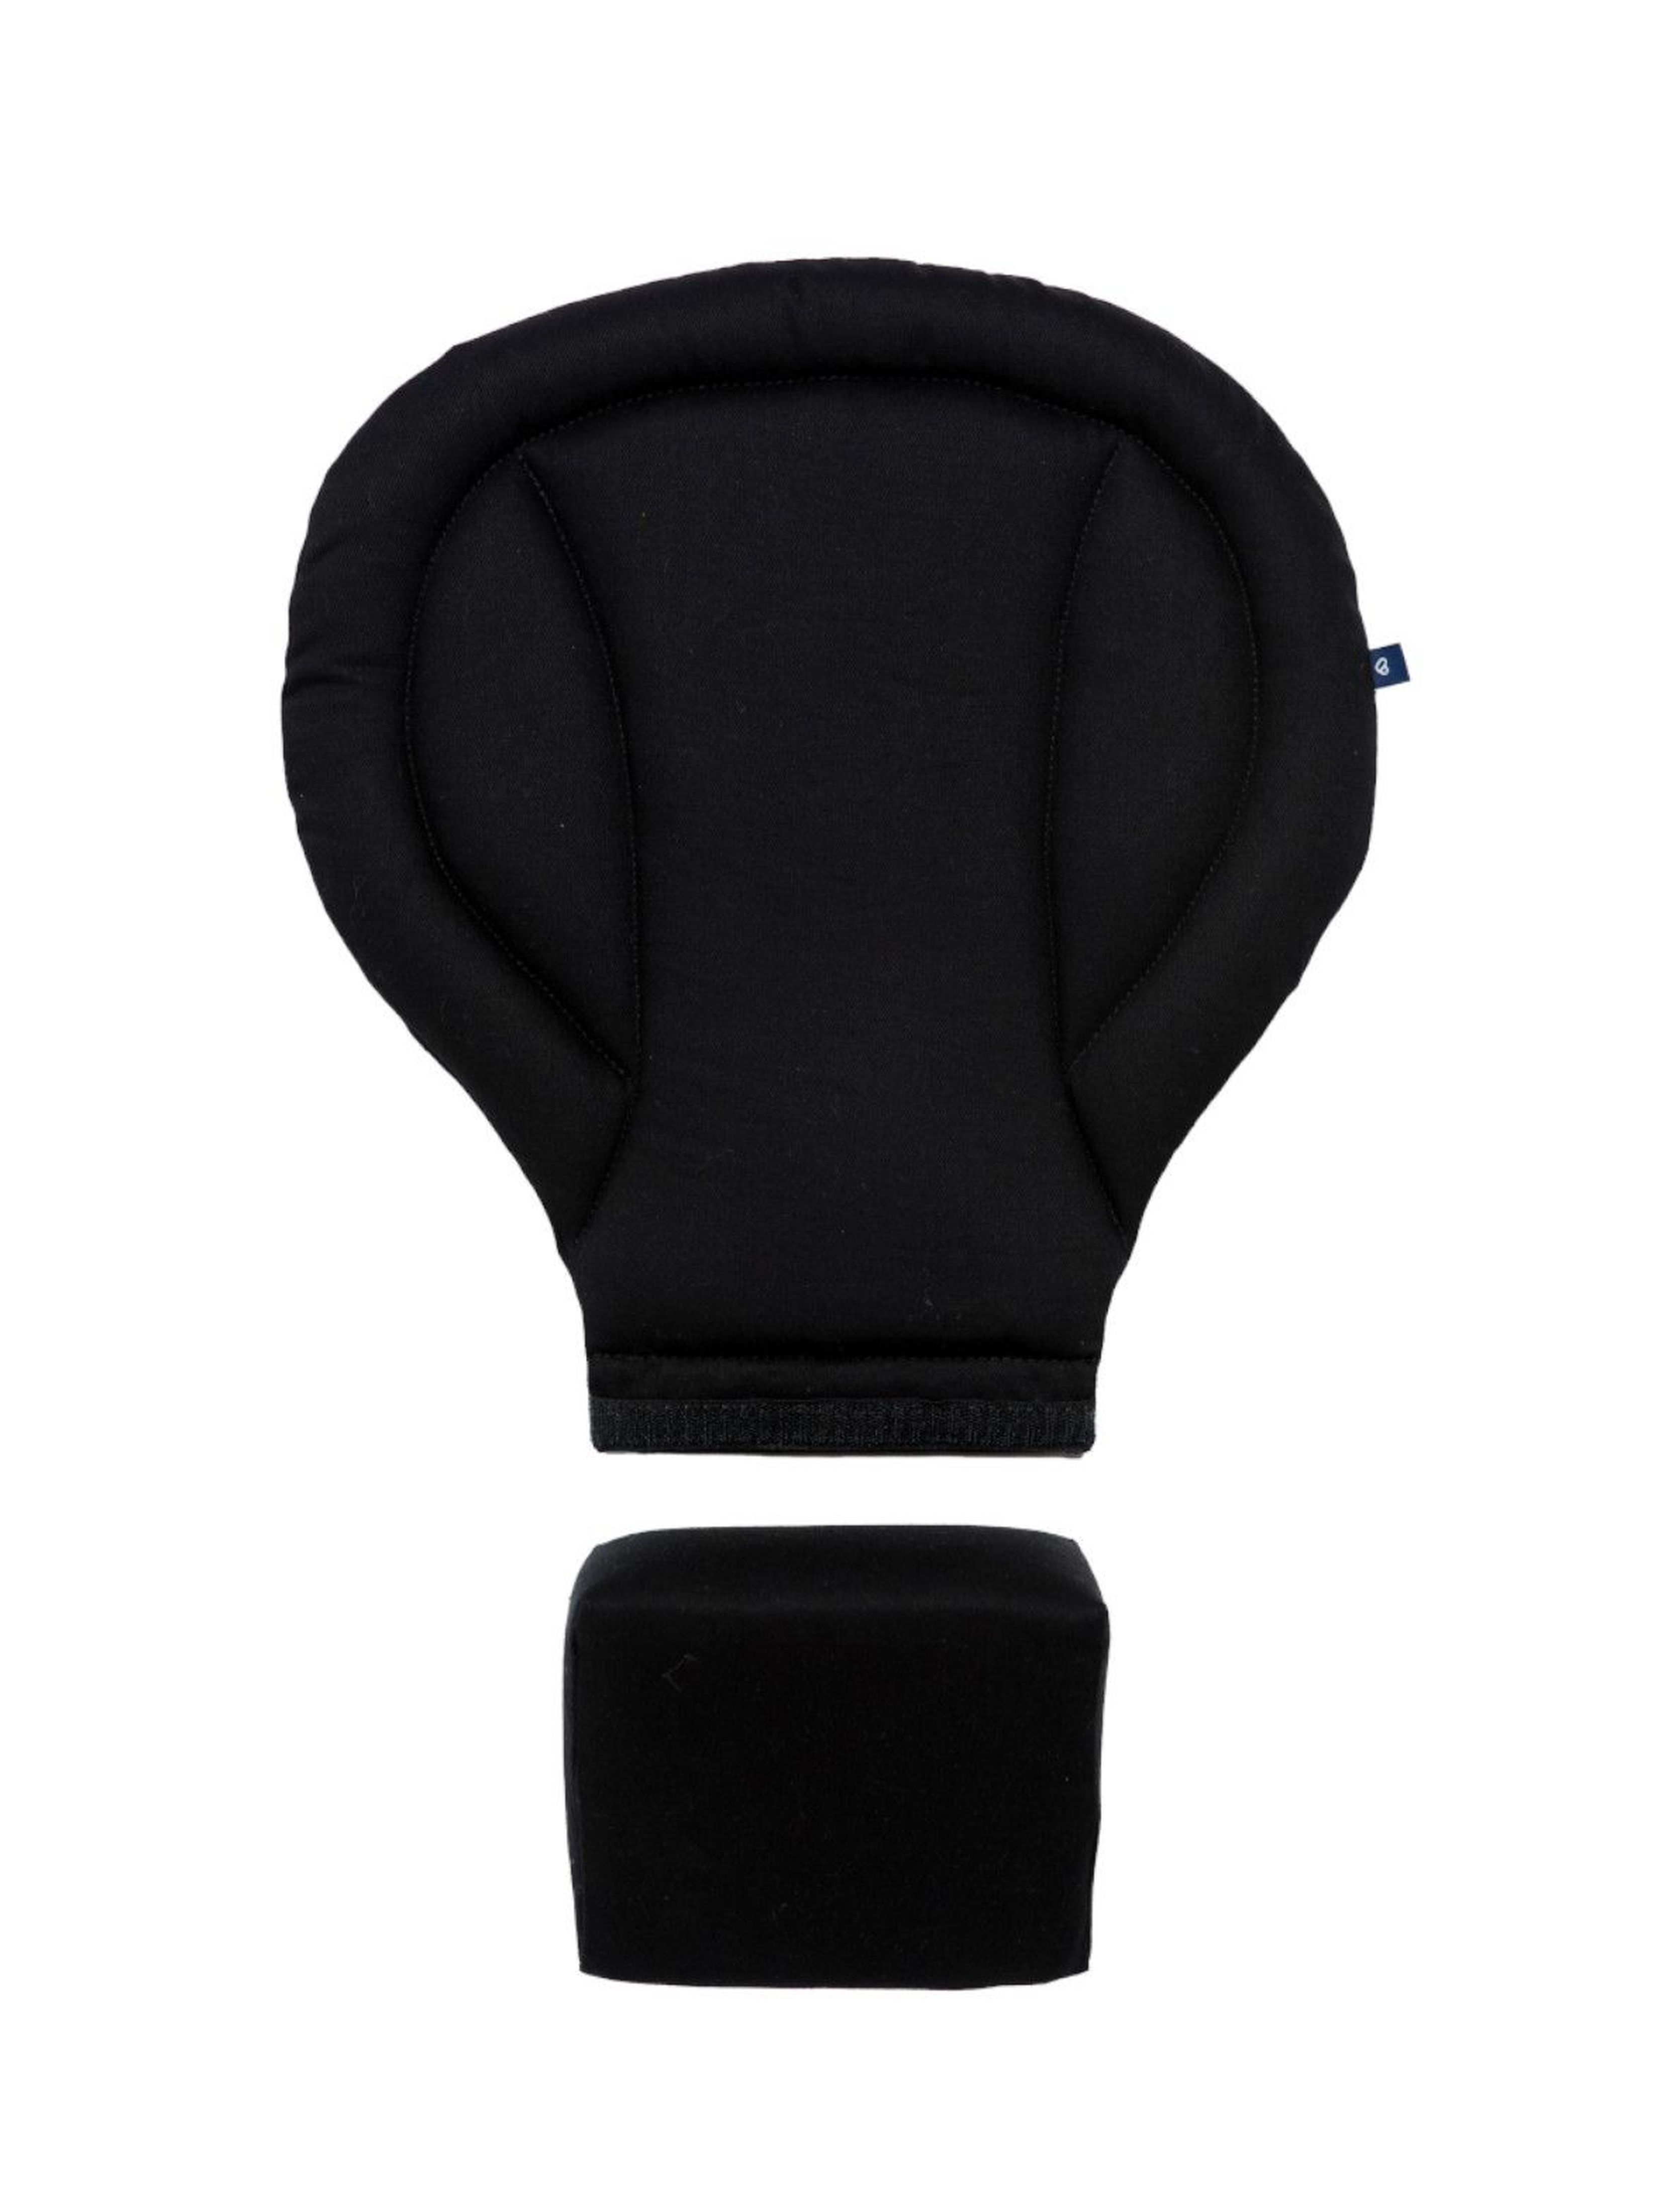 Wkładka Zaffiro do nosidełka ergonomicznego